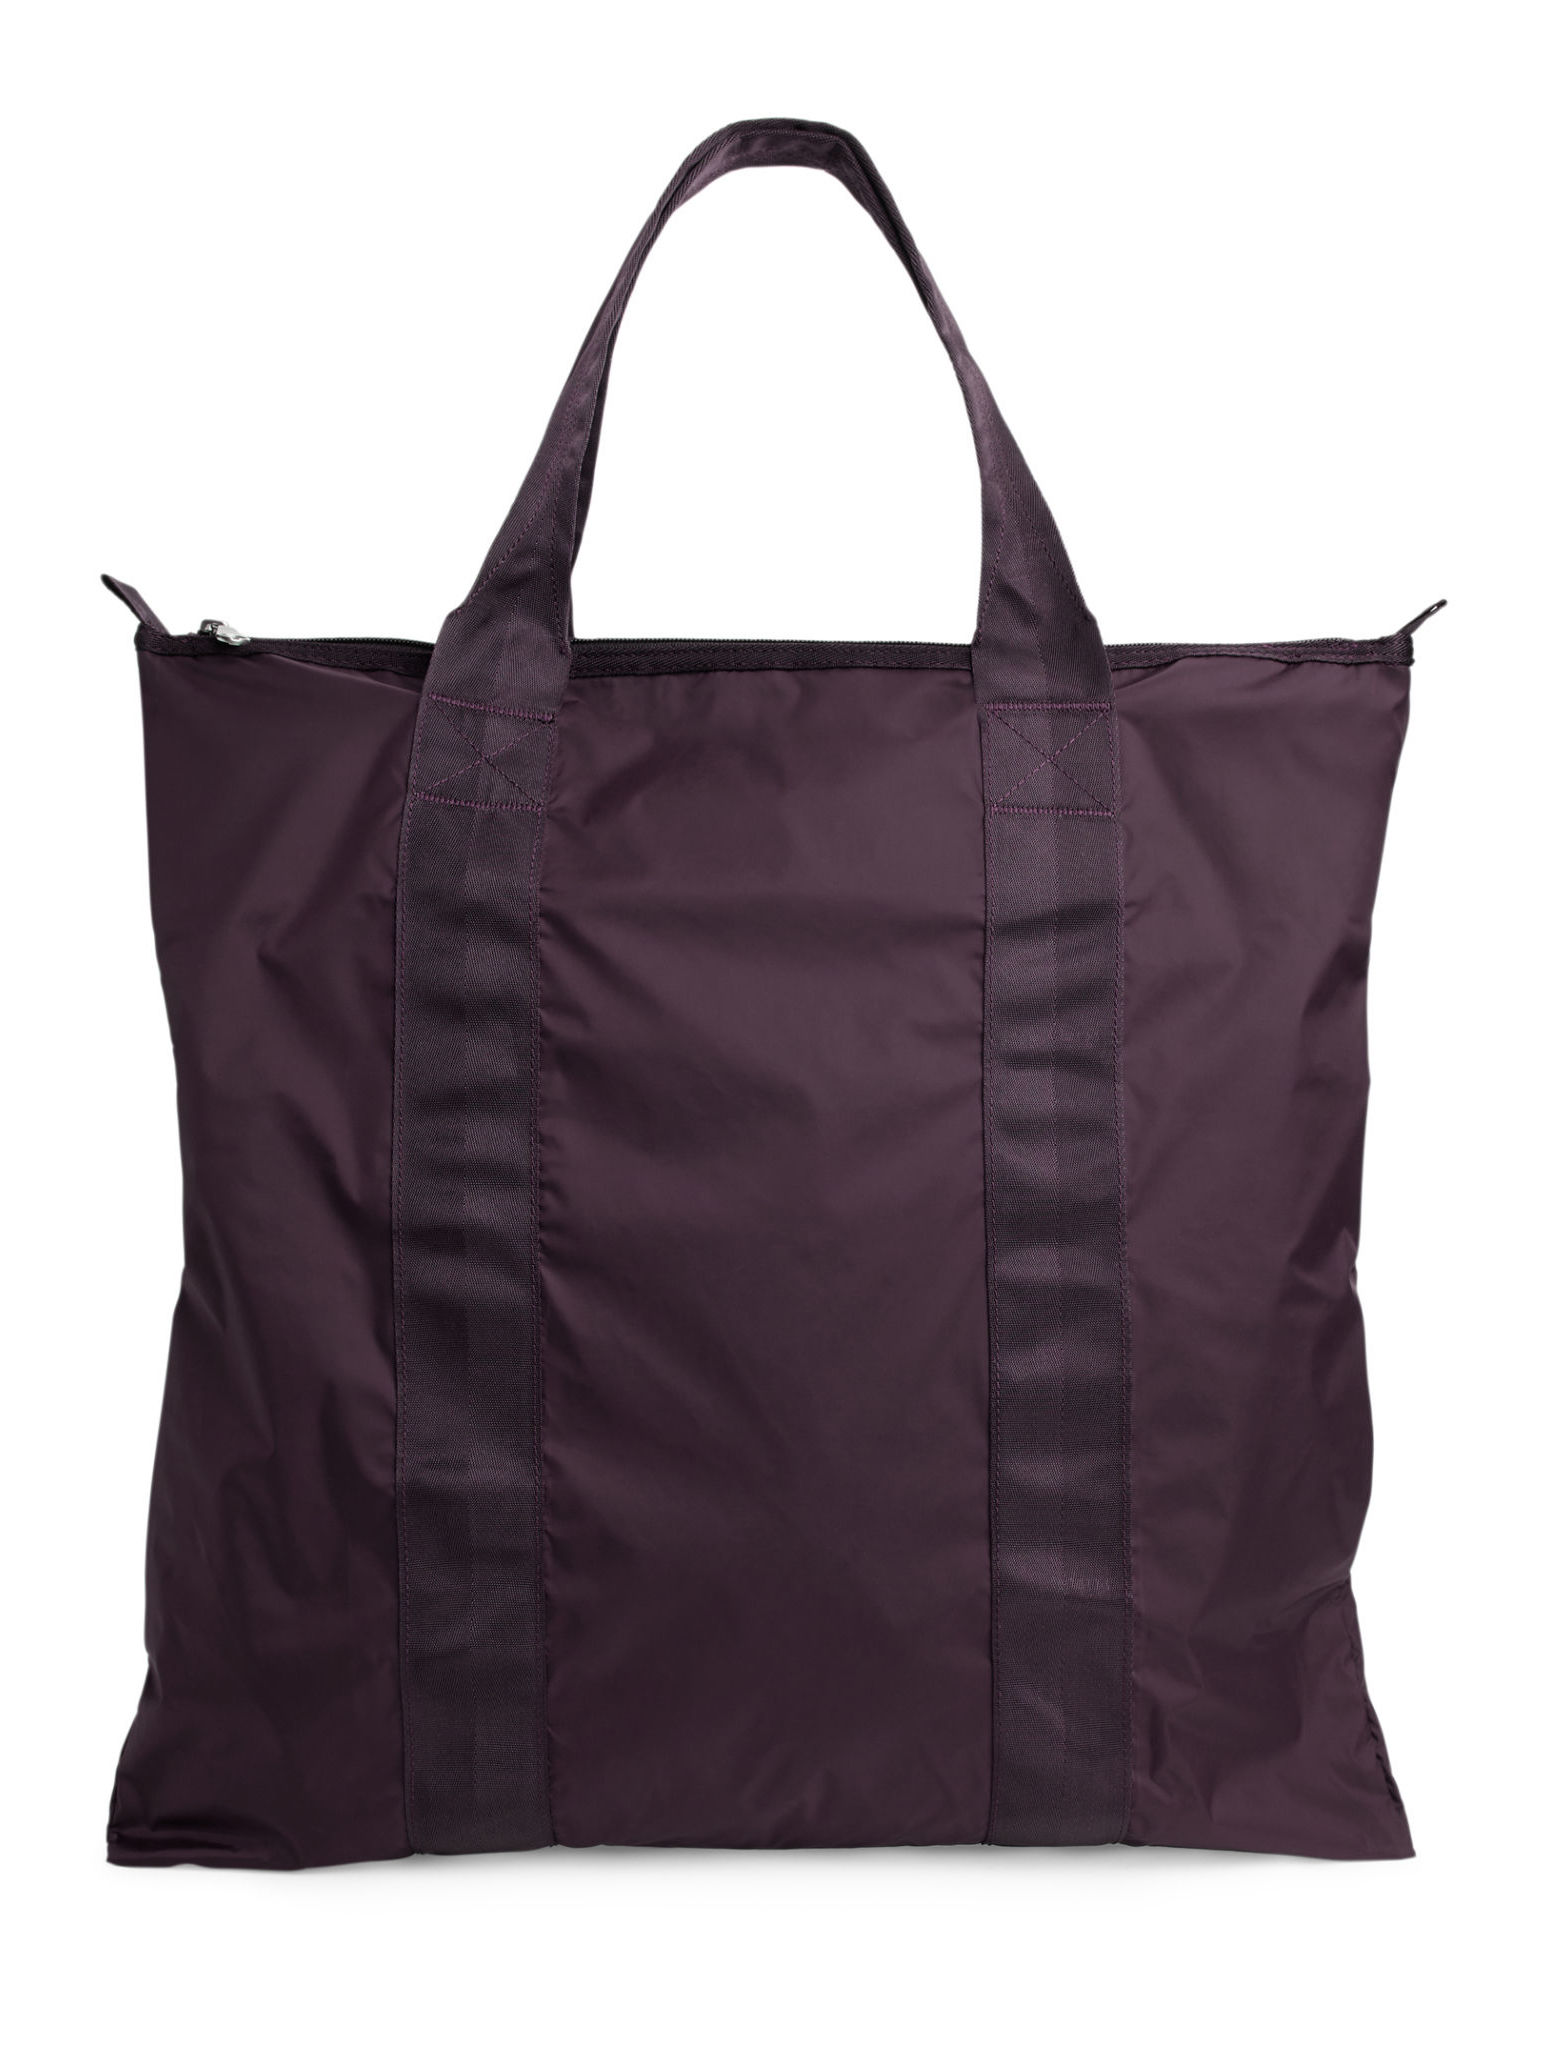 ARKET Packable Tote Bag Burgundy